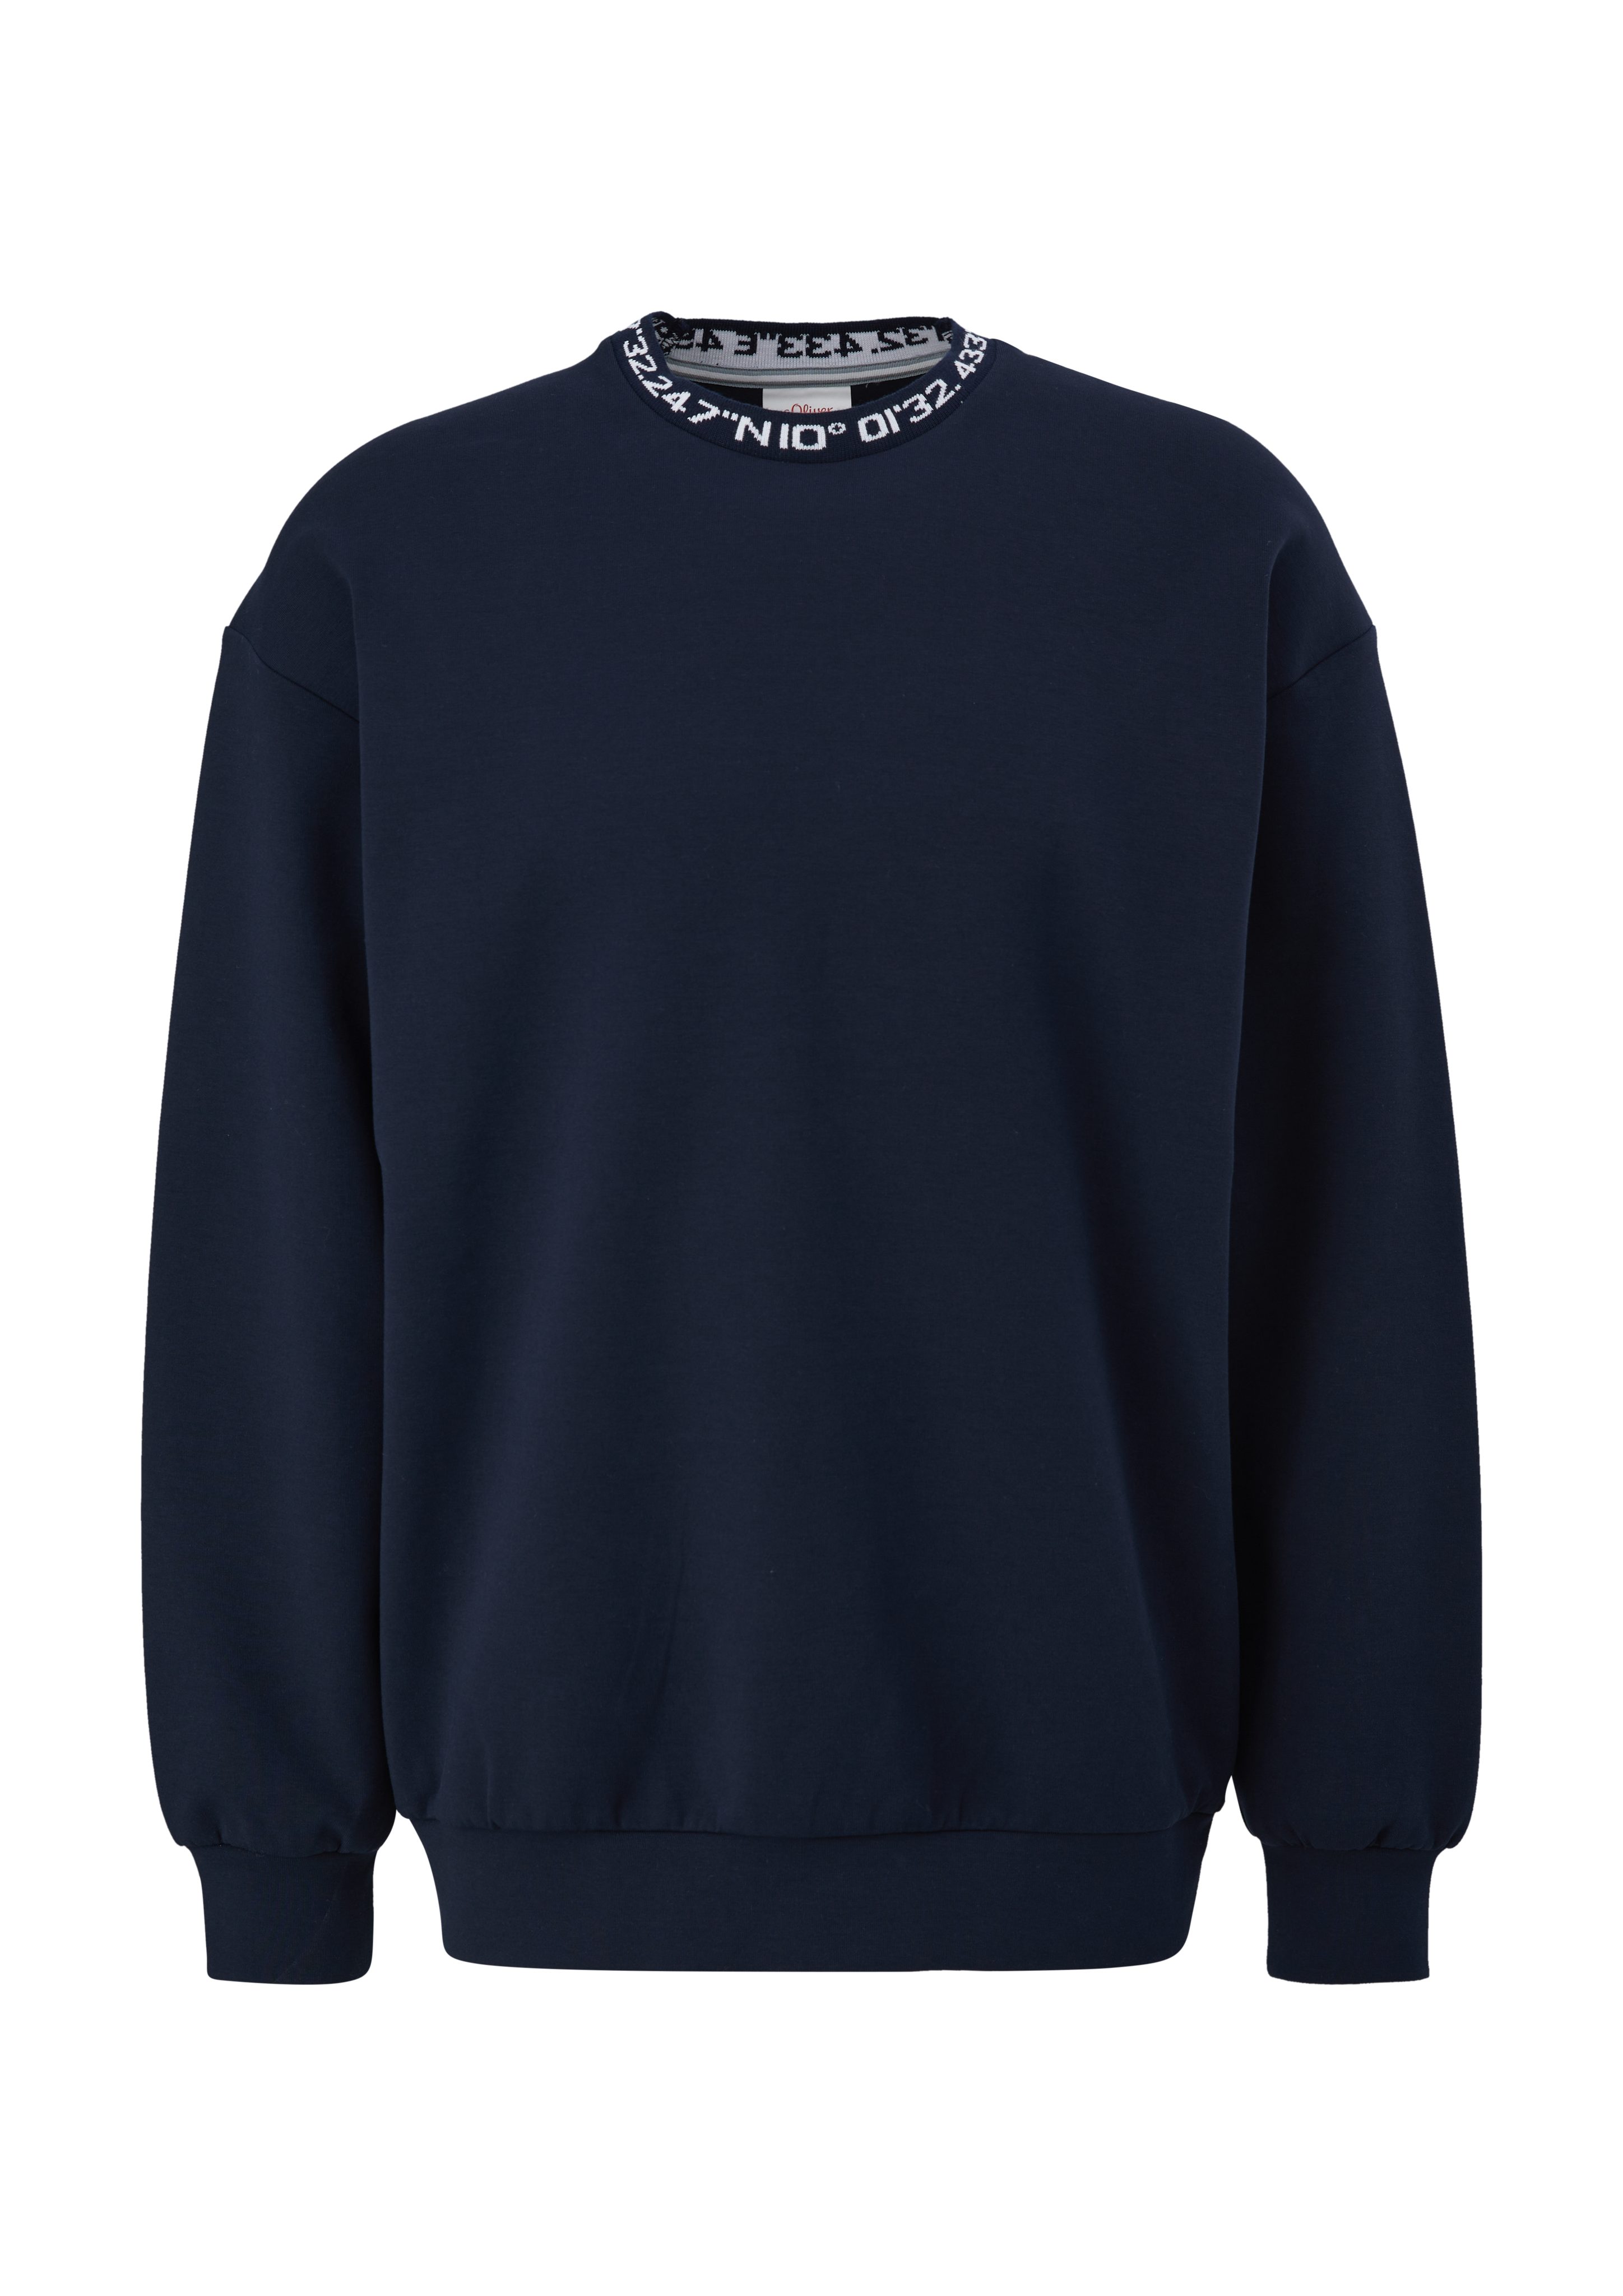 s.Oliver Sweatshirt Sweatshirt aus Baumwollmix Logo, Rippblende